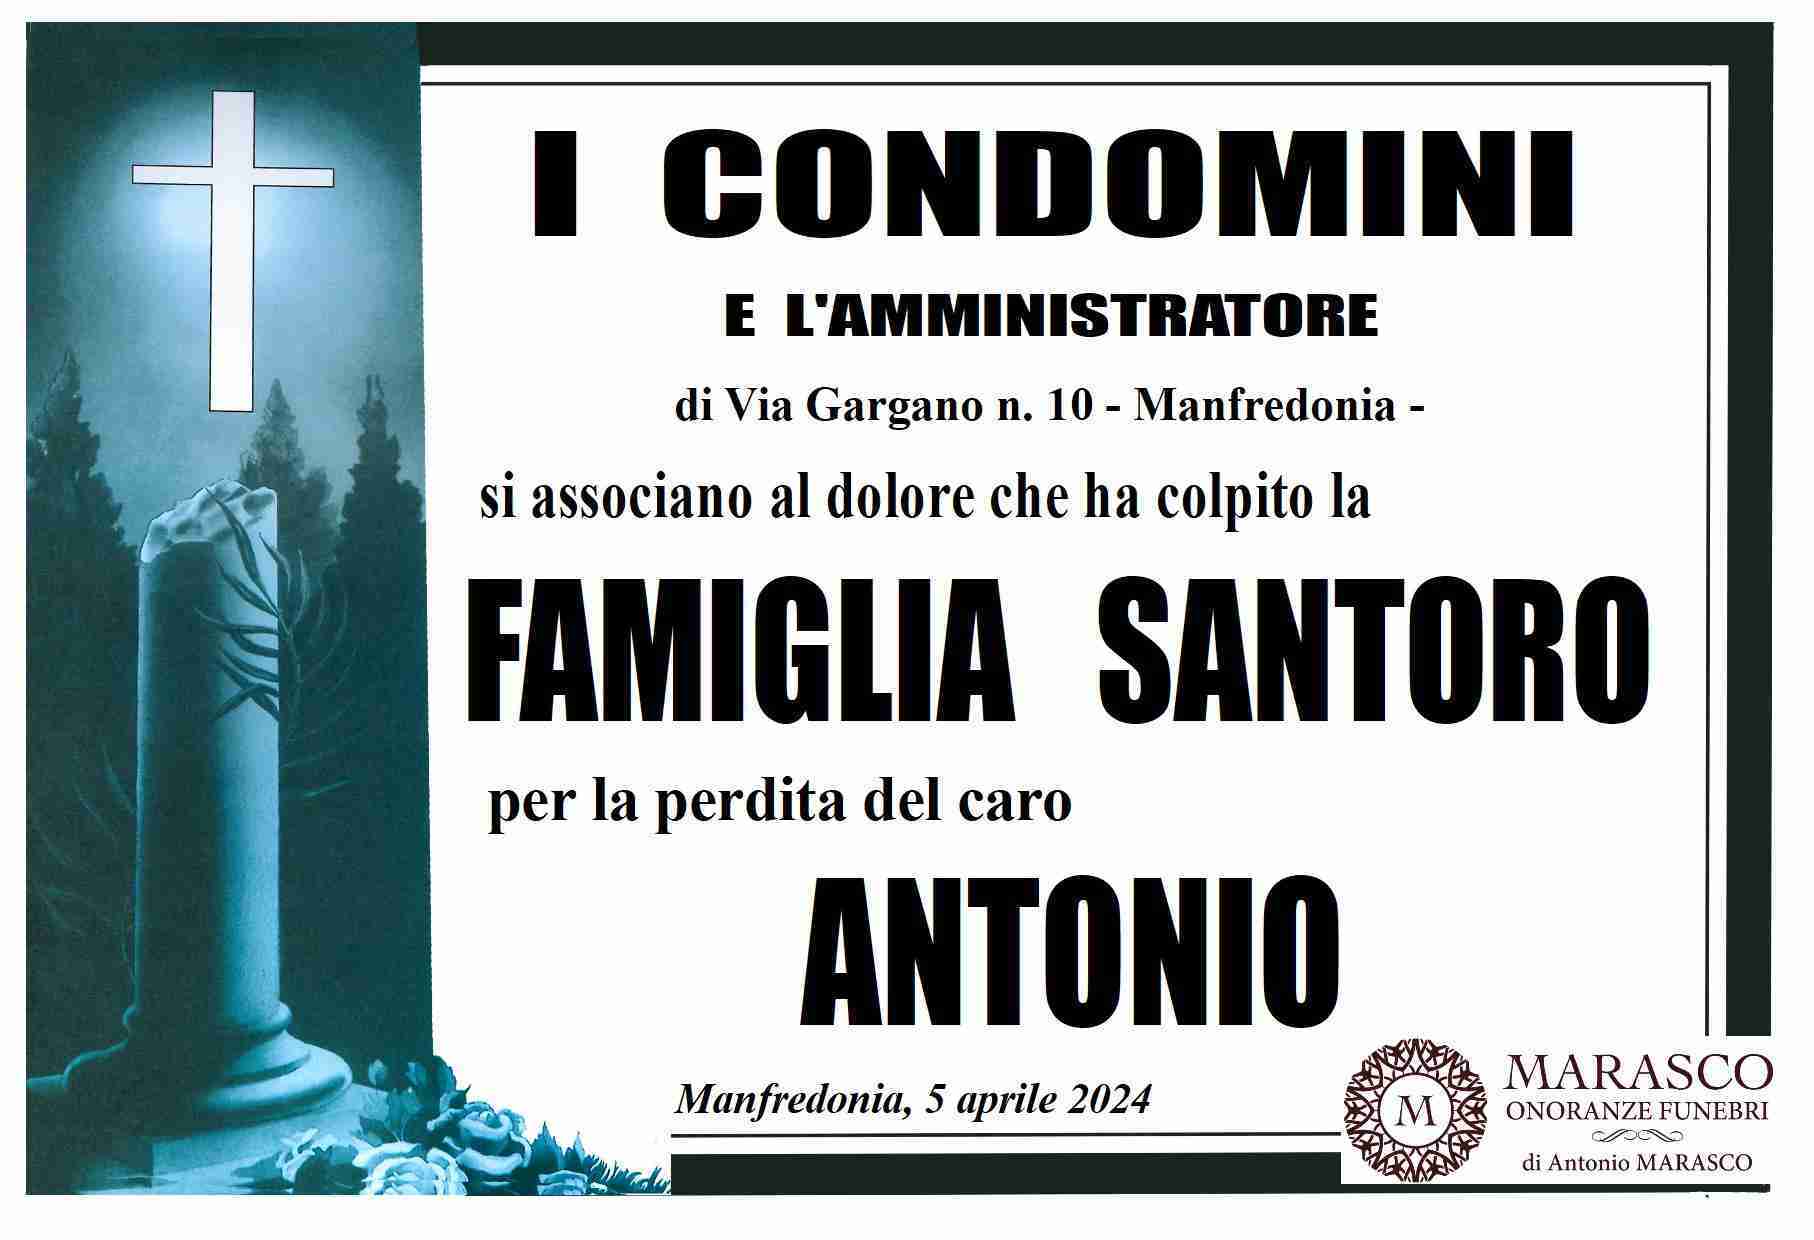 Antonio Santoro